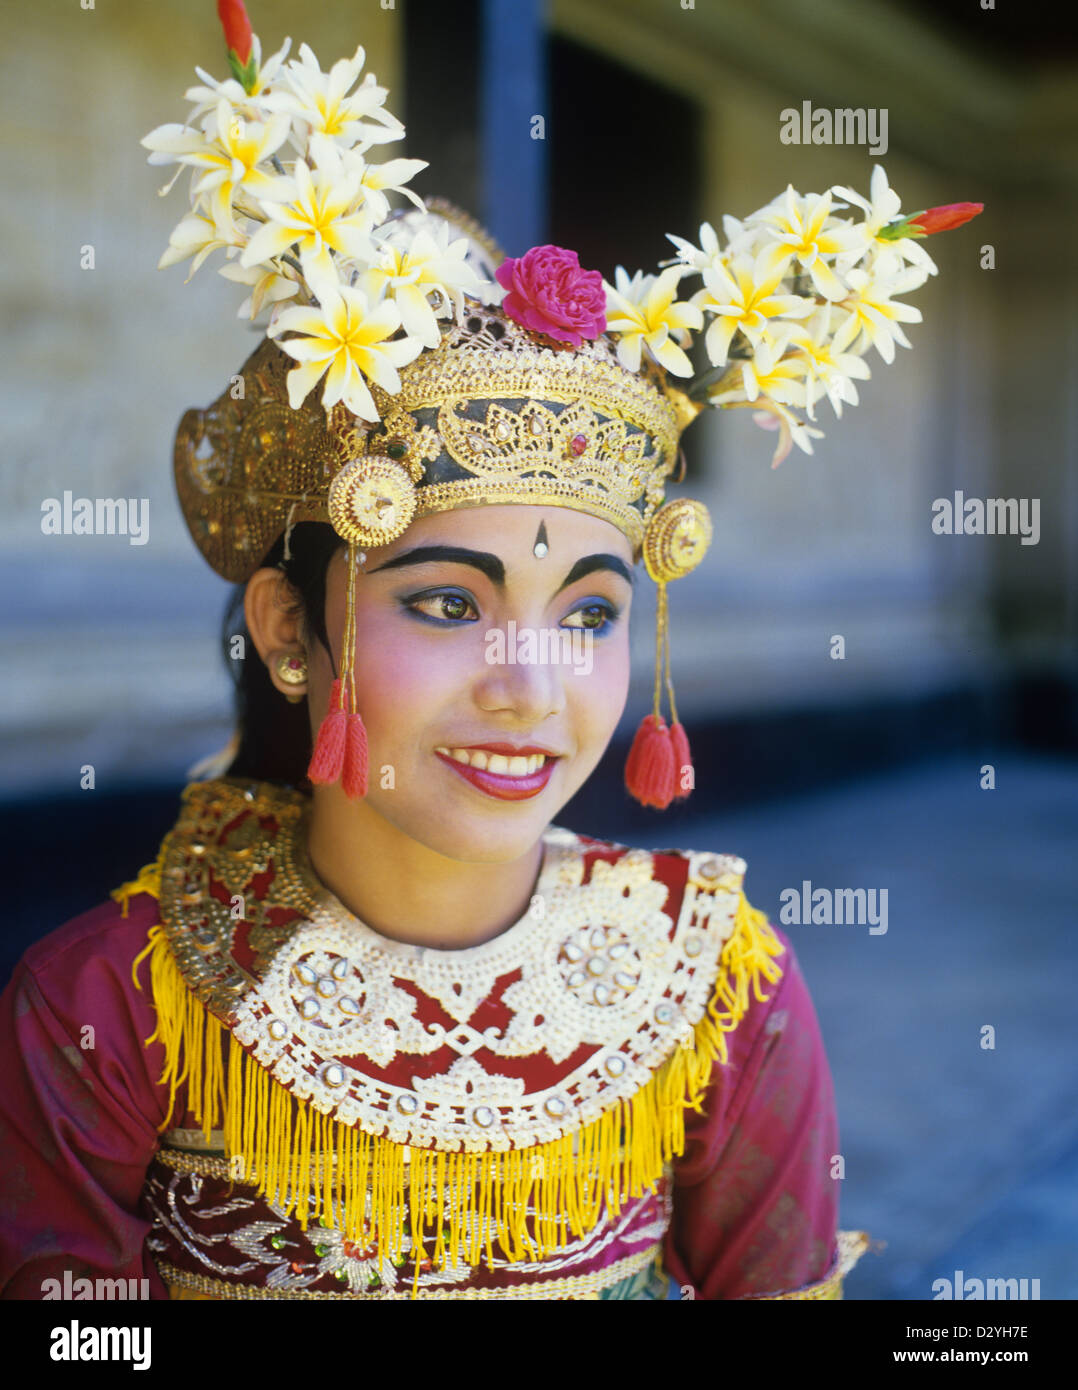 Indonesia, Bali, Ubud, Legong Dancer Stock Photo